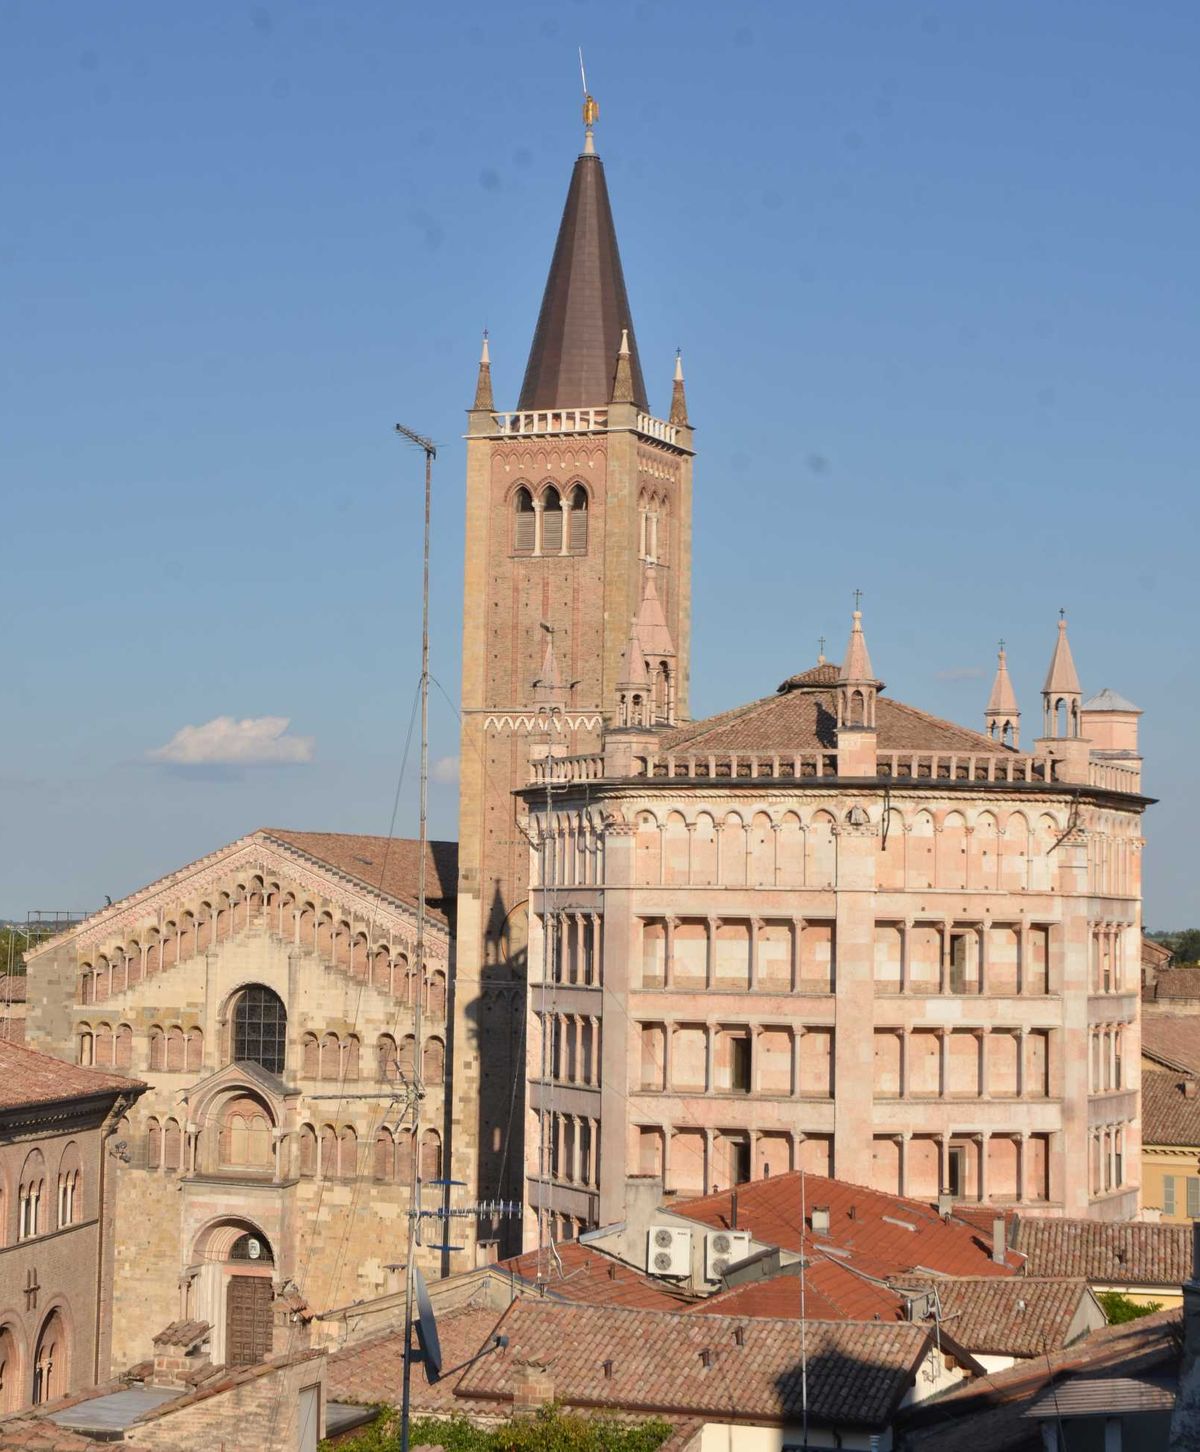 Vista della cattedrale di Parma con il campanile oggetto dell’intervento di restauro.